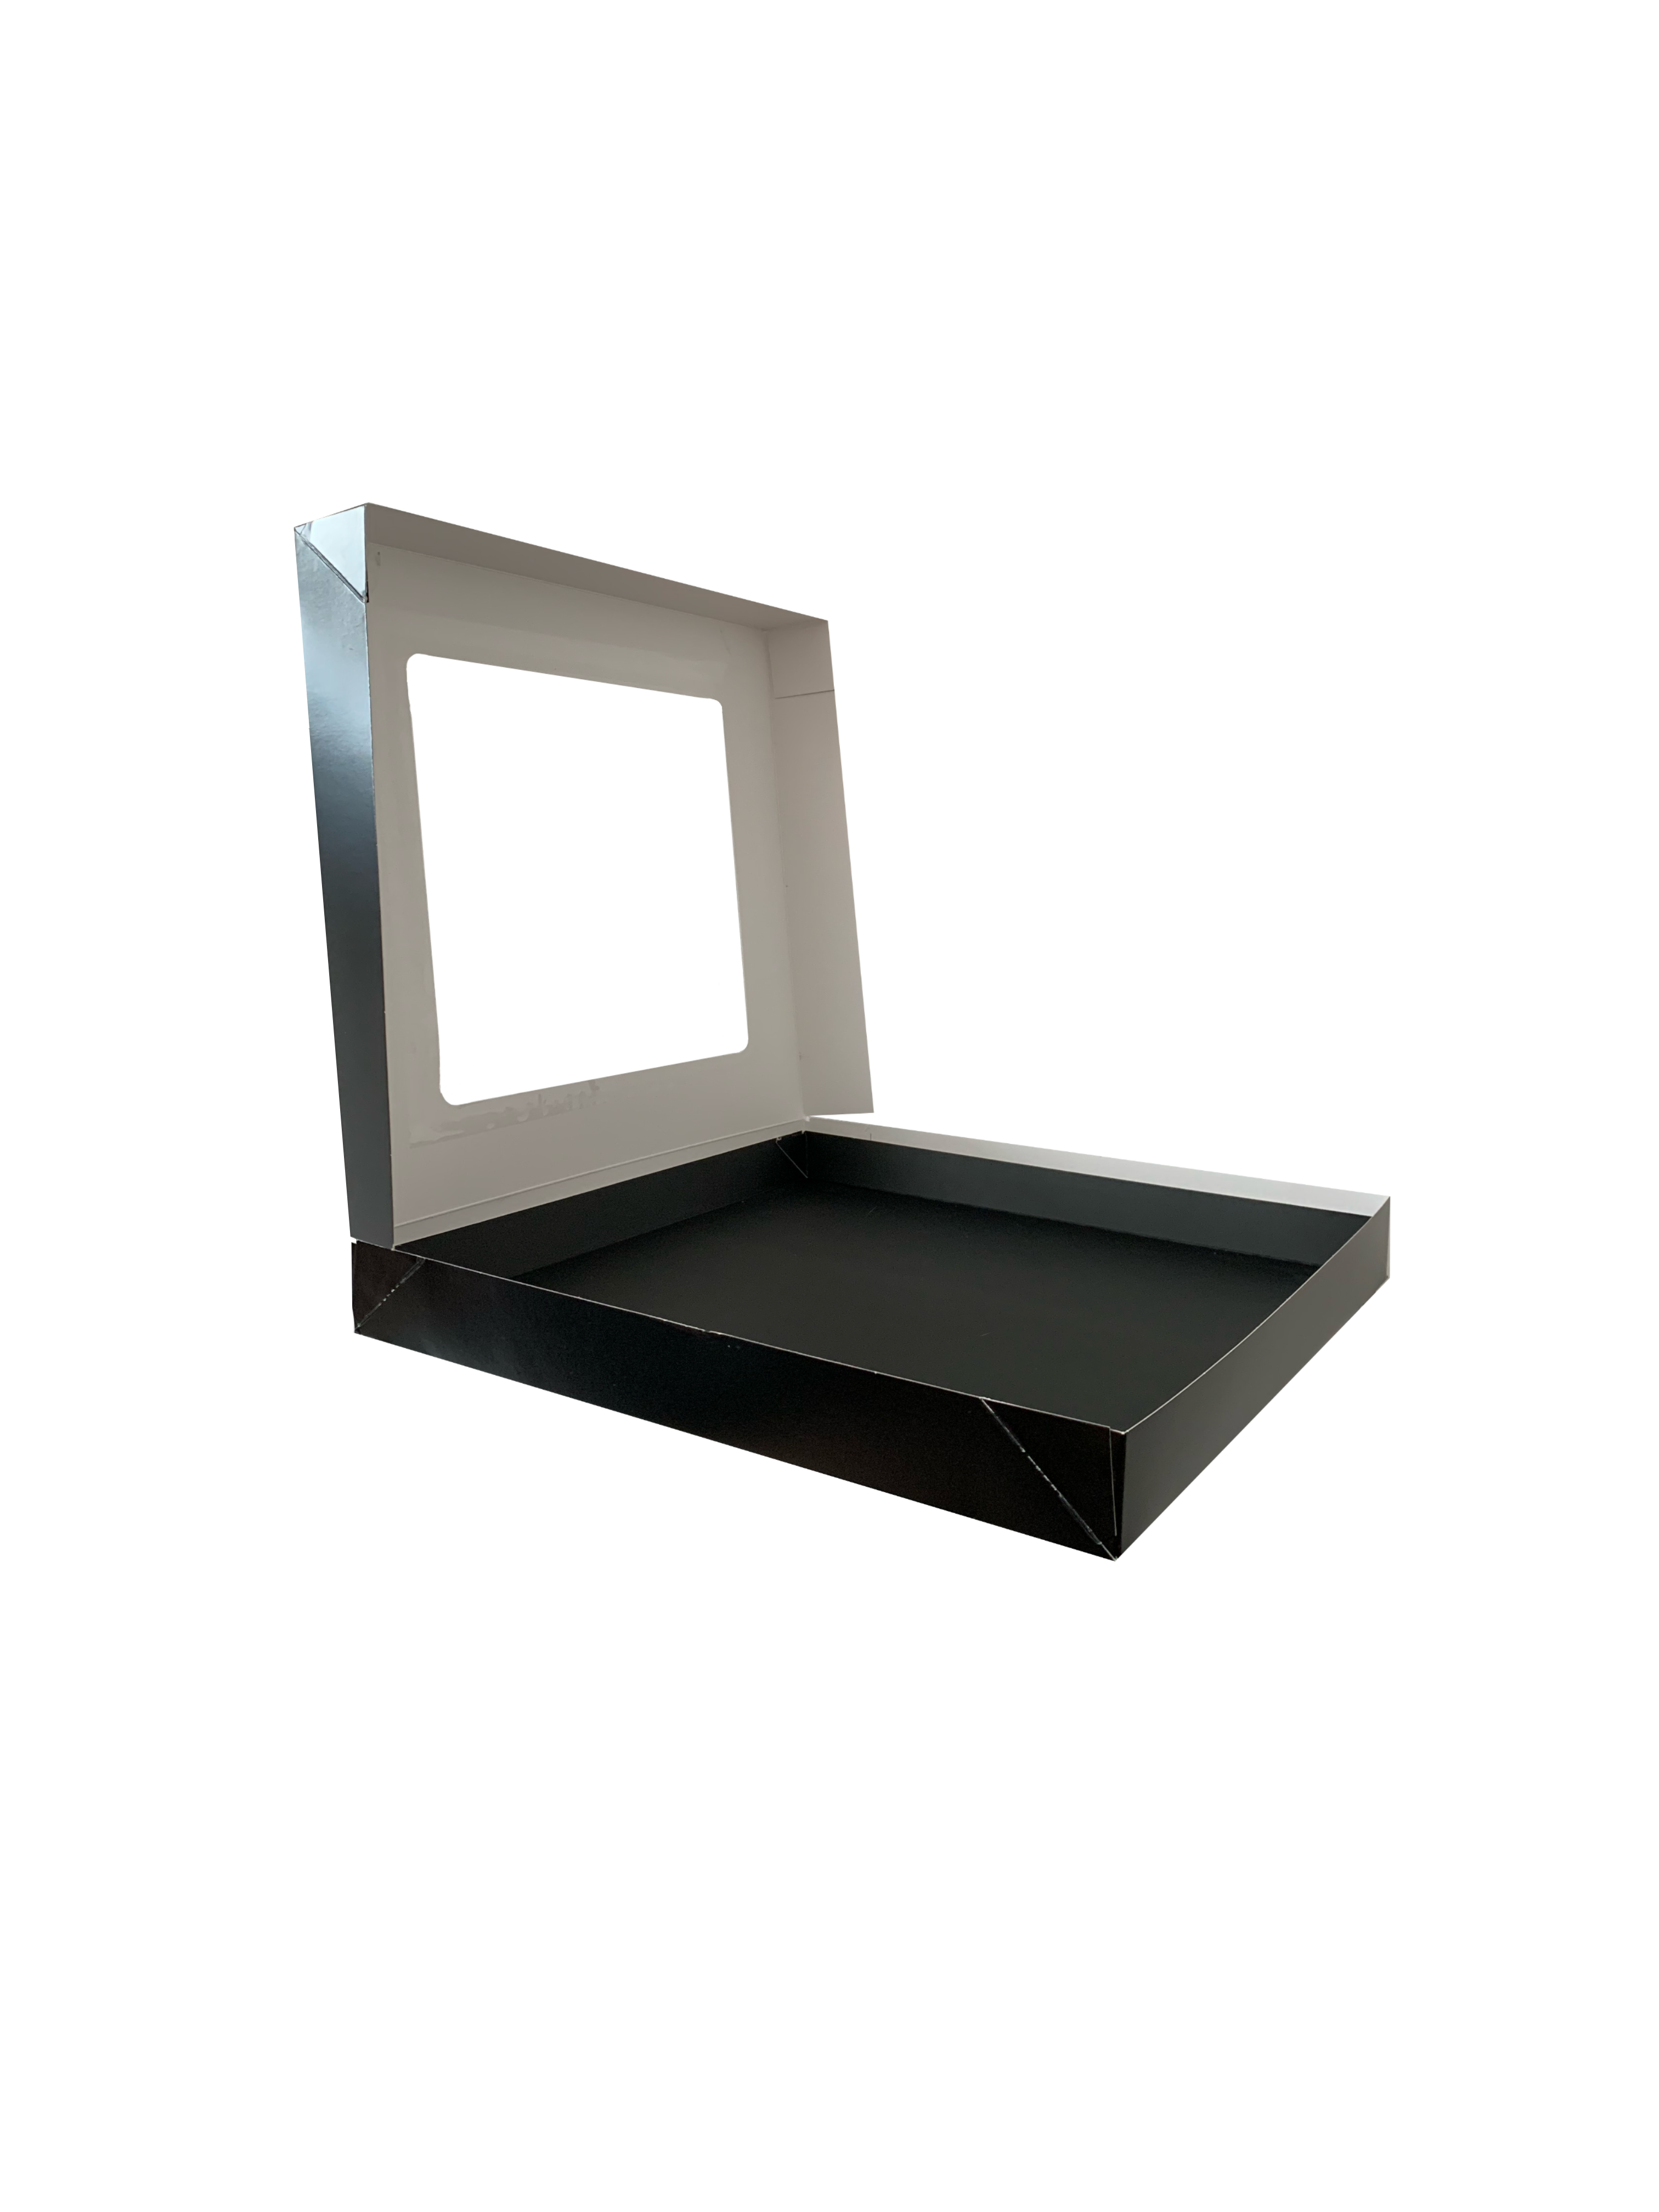 Bio Party-Sushi-Box 10 (S), 270x270x52 mm, "Black Edition", schwarz, mit Sichtfenster & Tray, 100 Stück/Karton